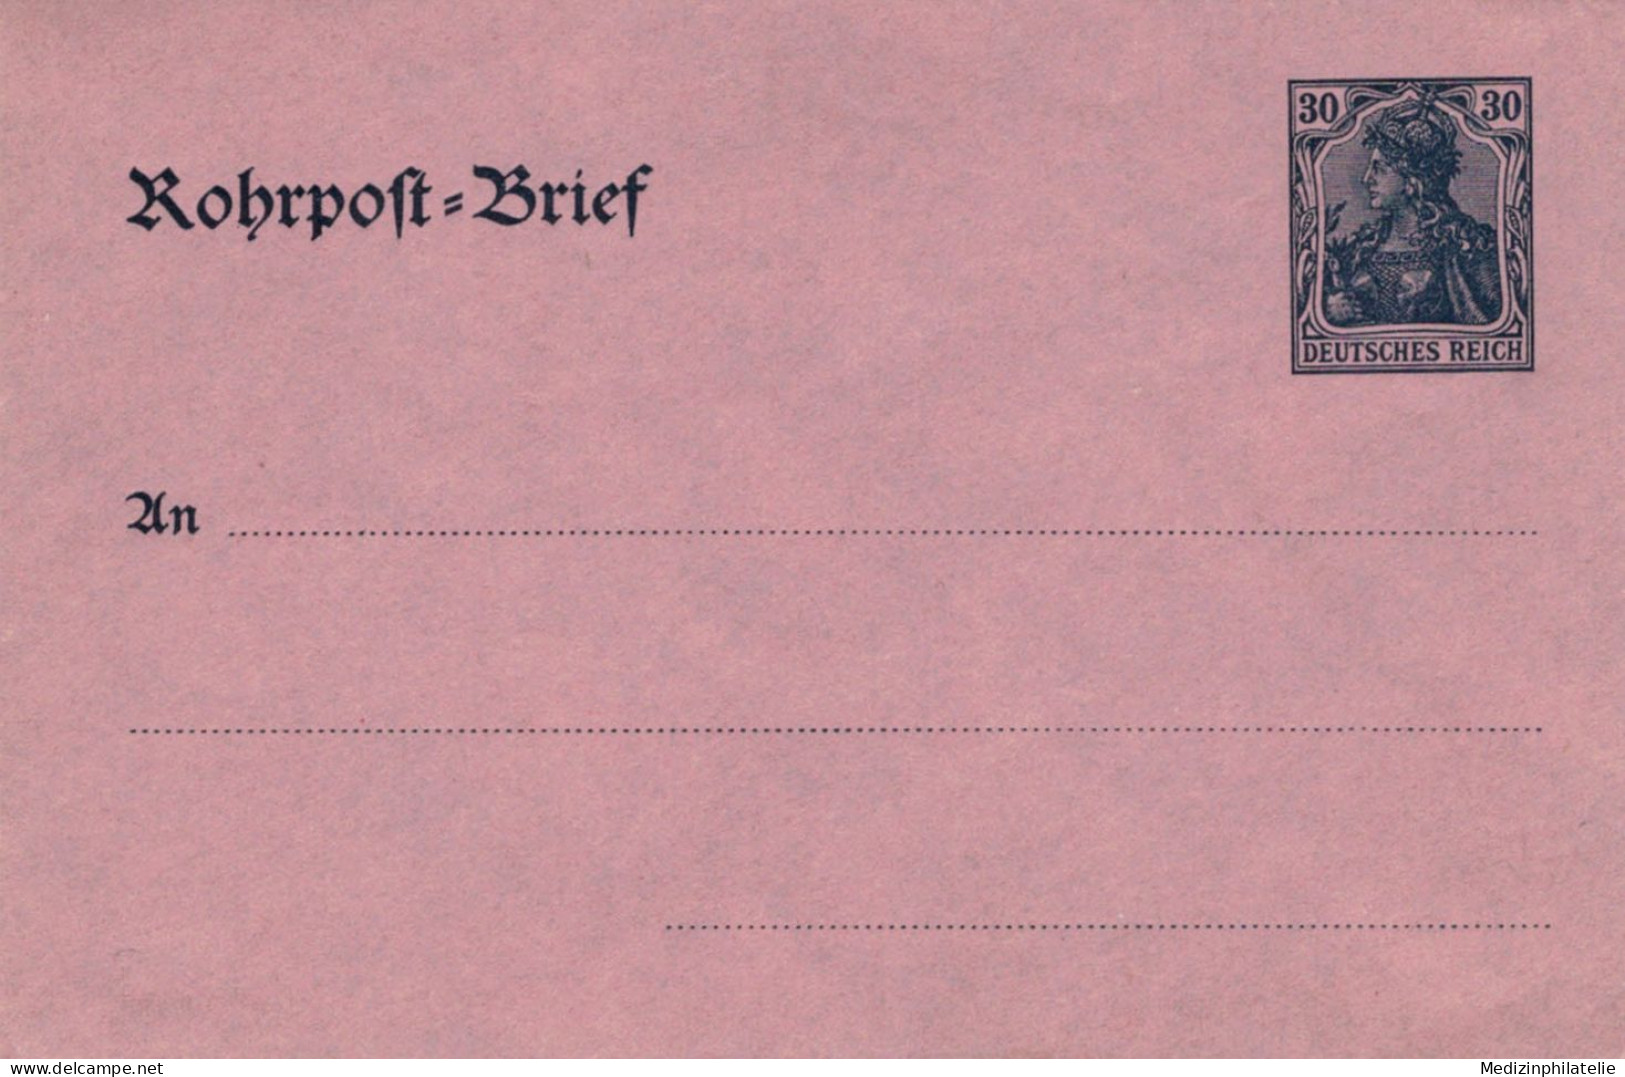 Rohrpost-Brief 30 Pf. Germania Glattes Papier - Ungebraucht - Sobres